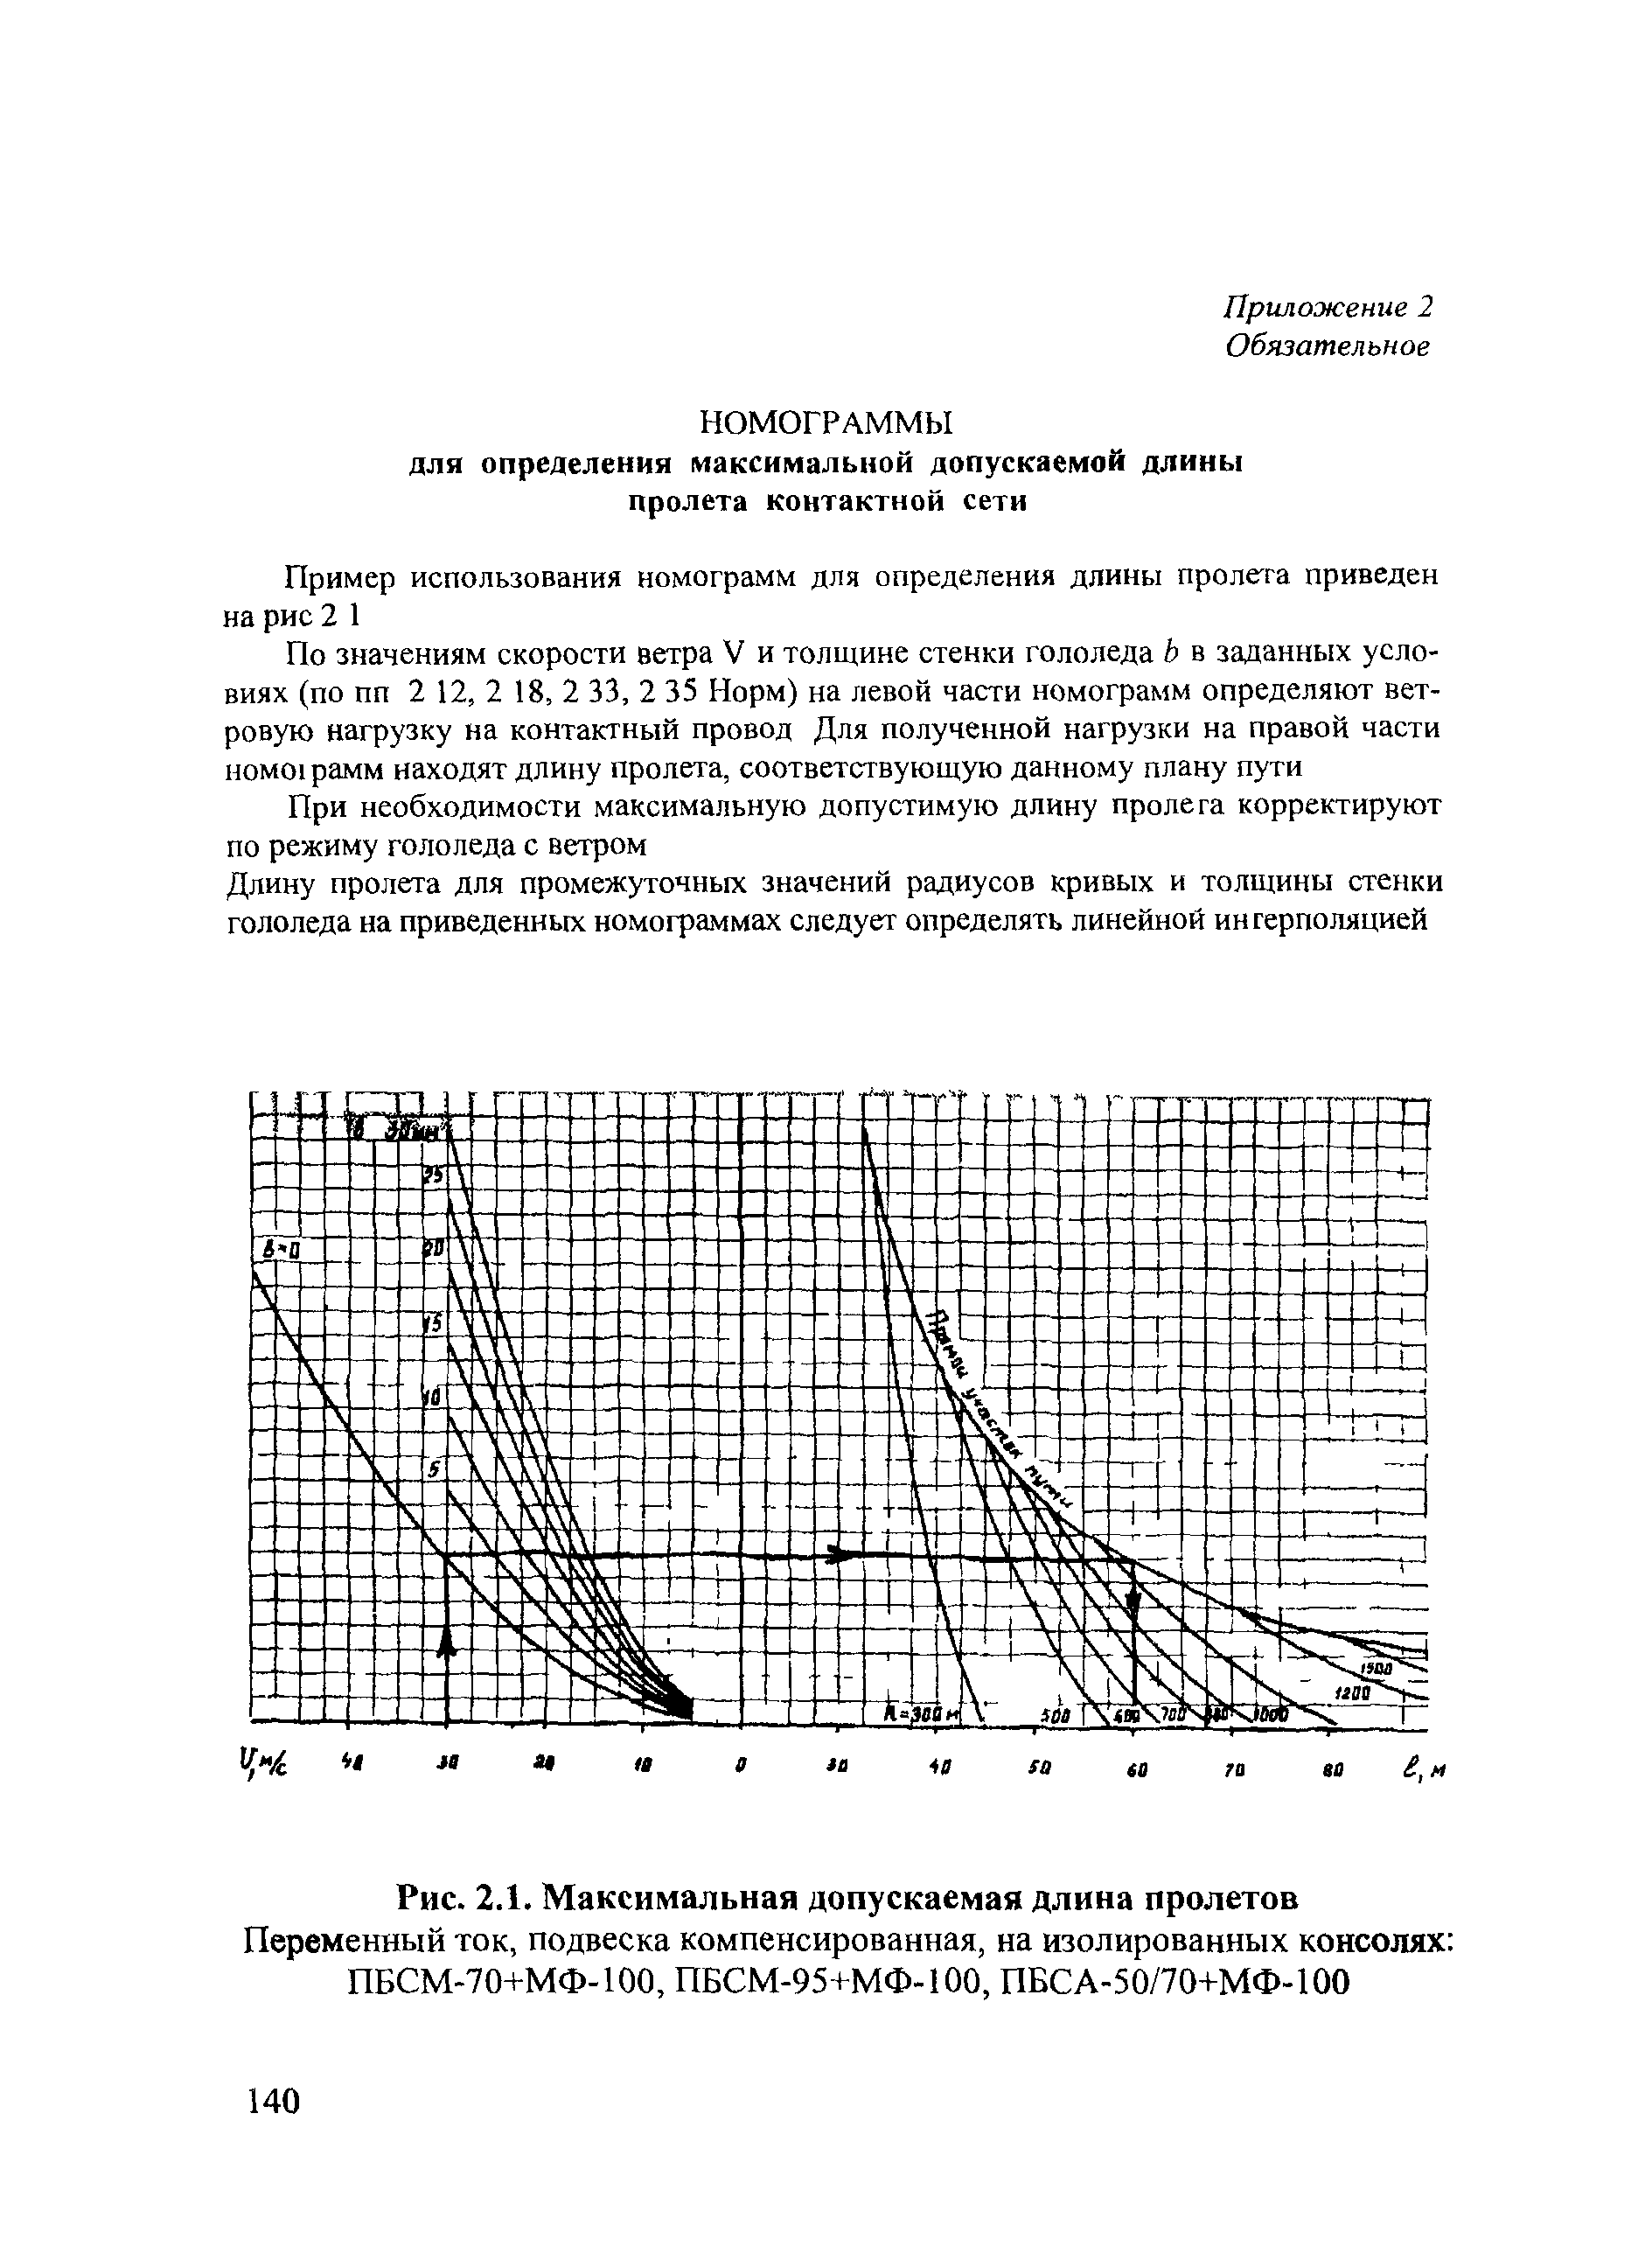 СТН ЦЭ 141-99